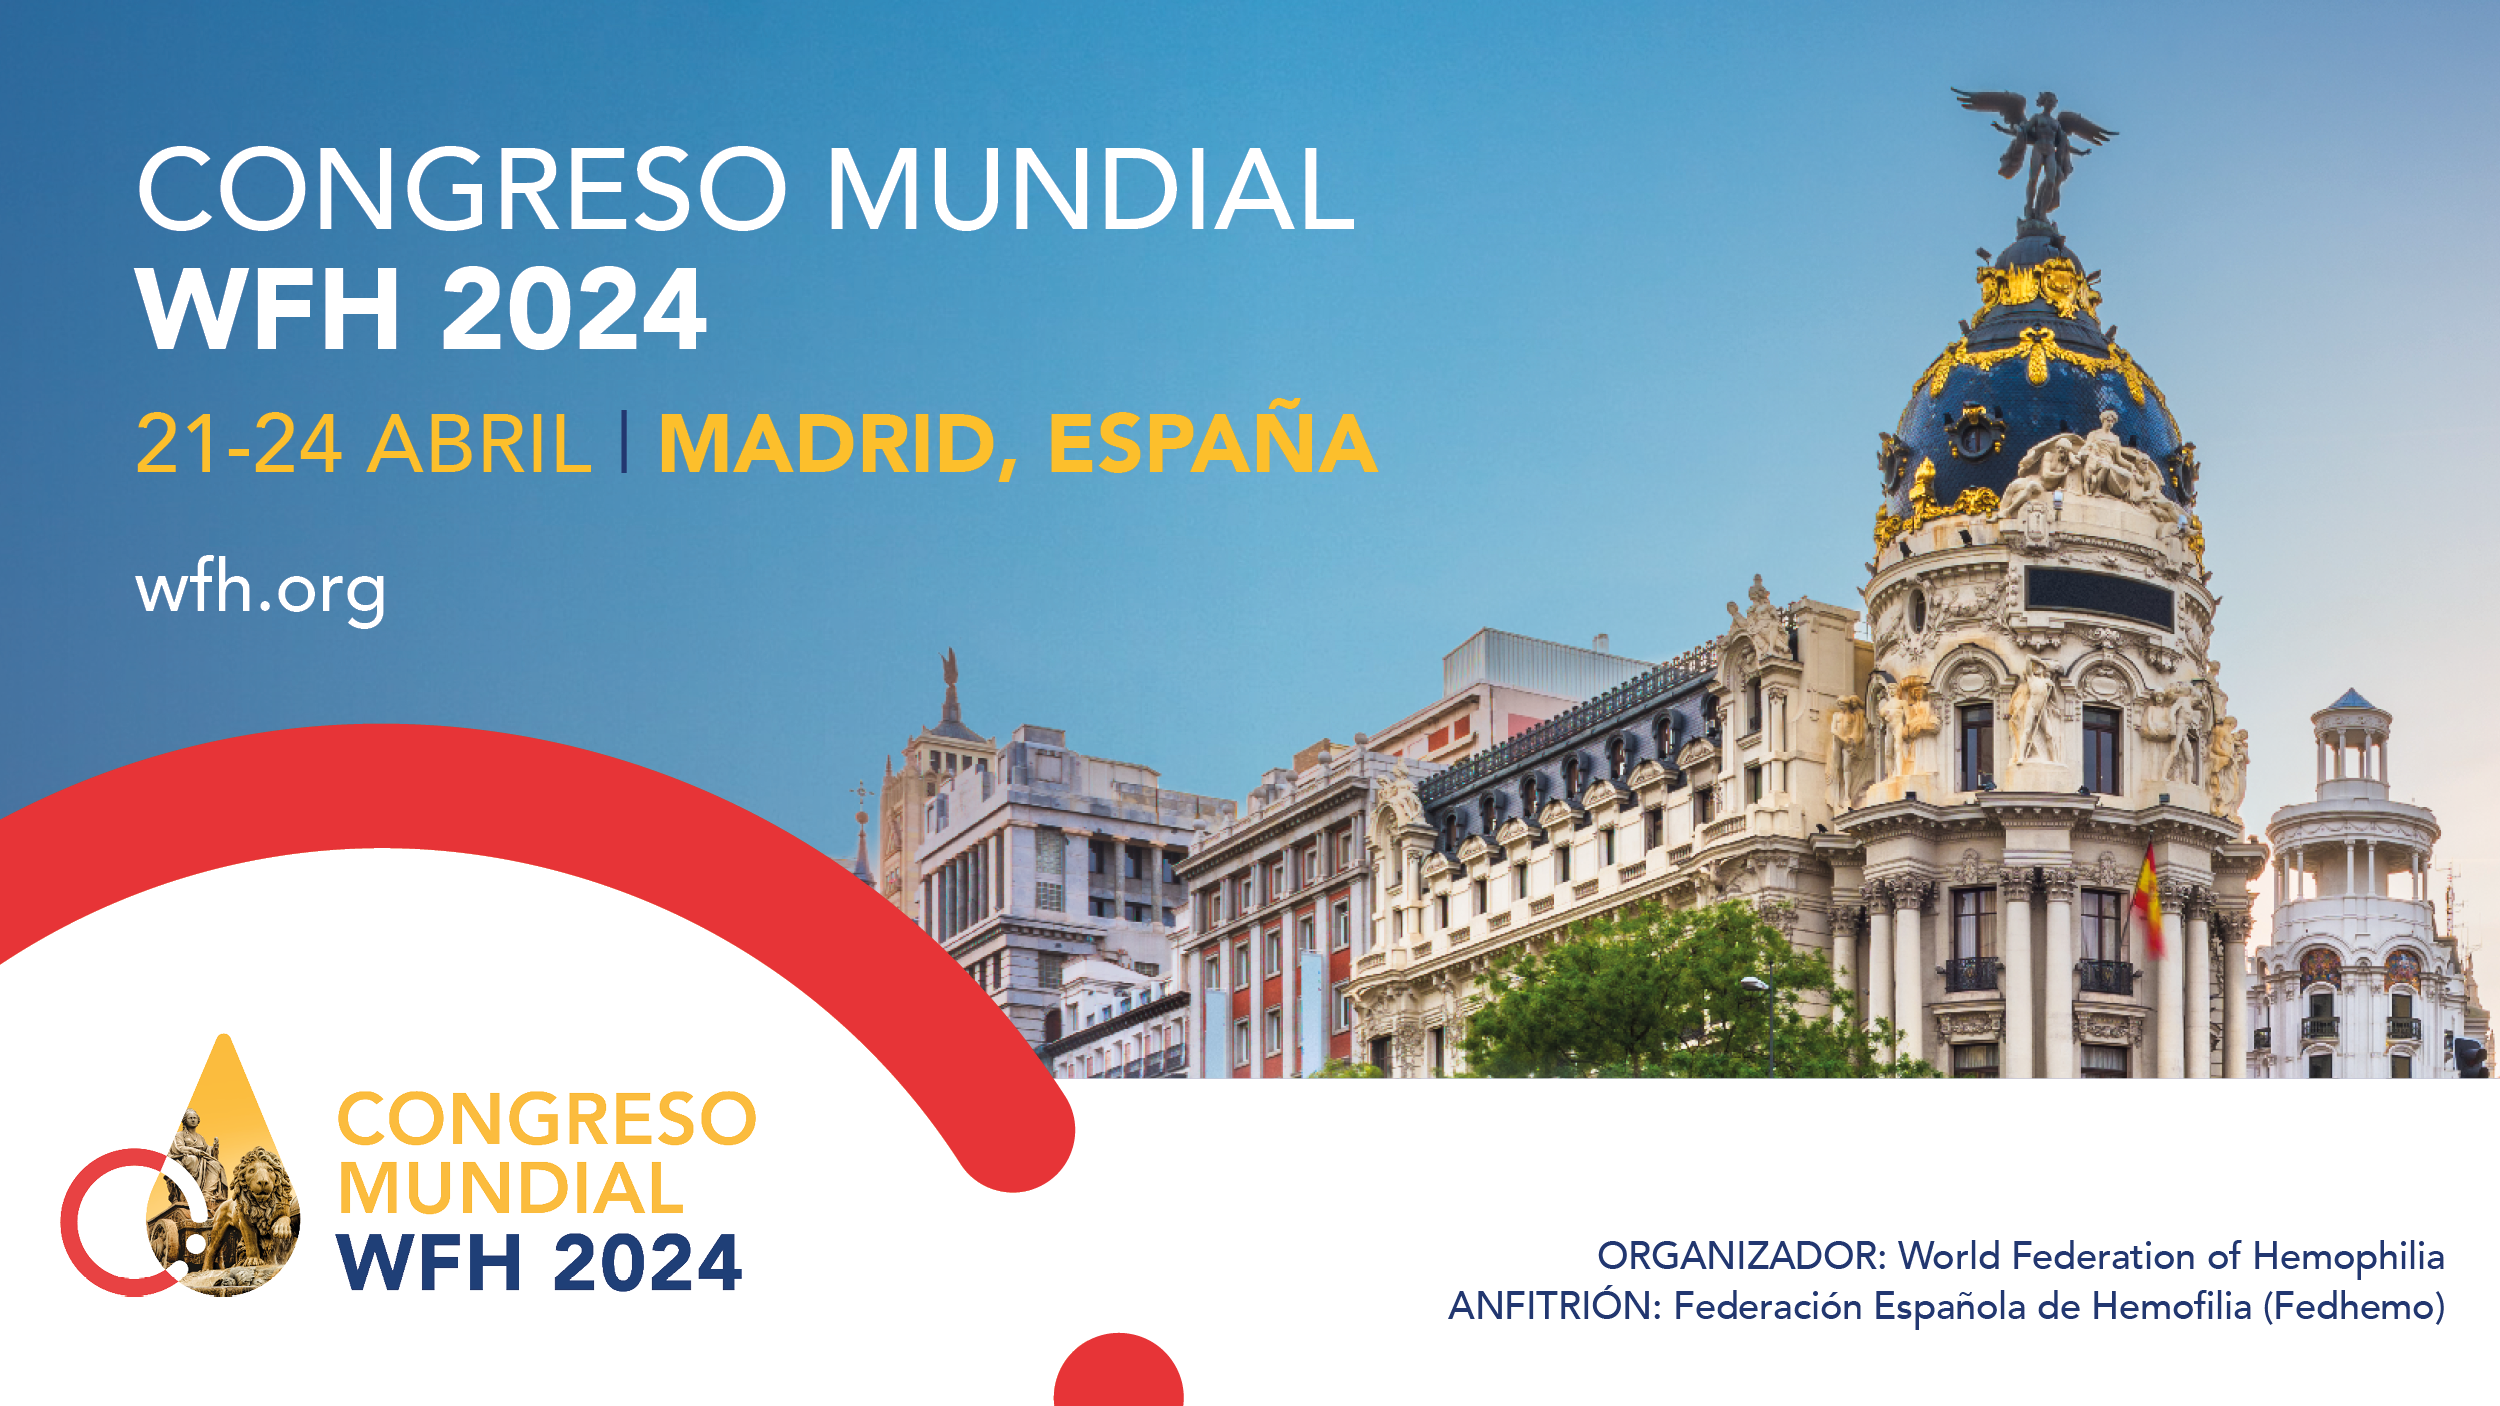 ¿Te gustaría poder asistir al Congreso Mundial de Hemofilia en Madrid?